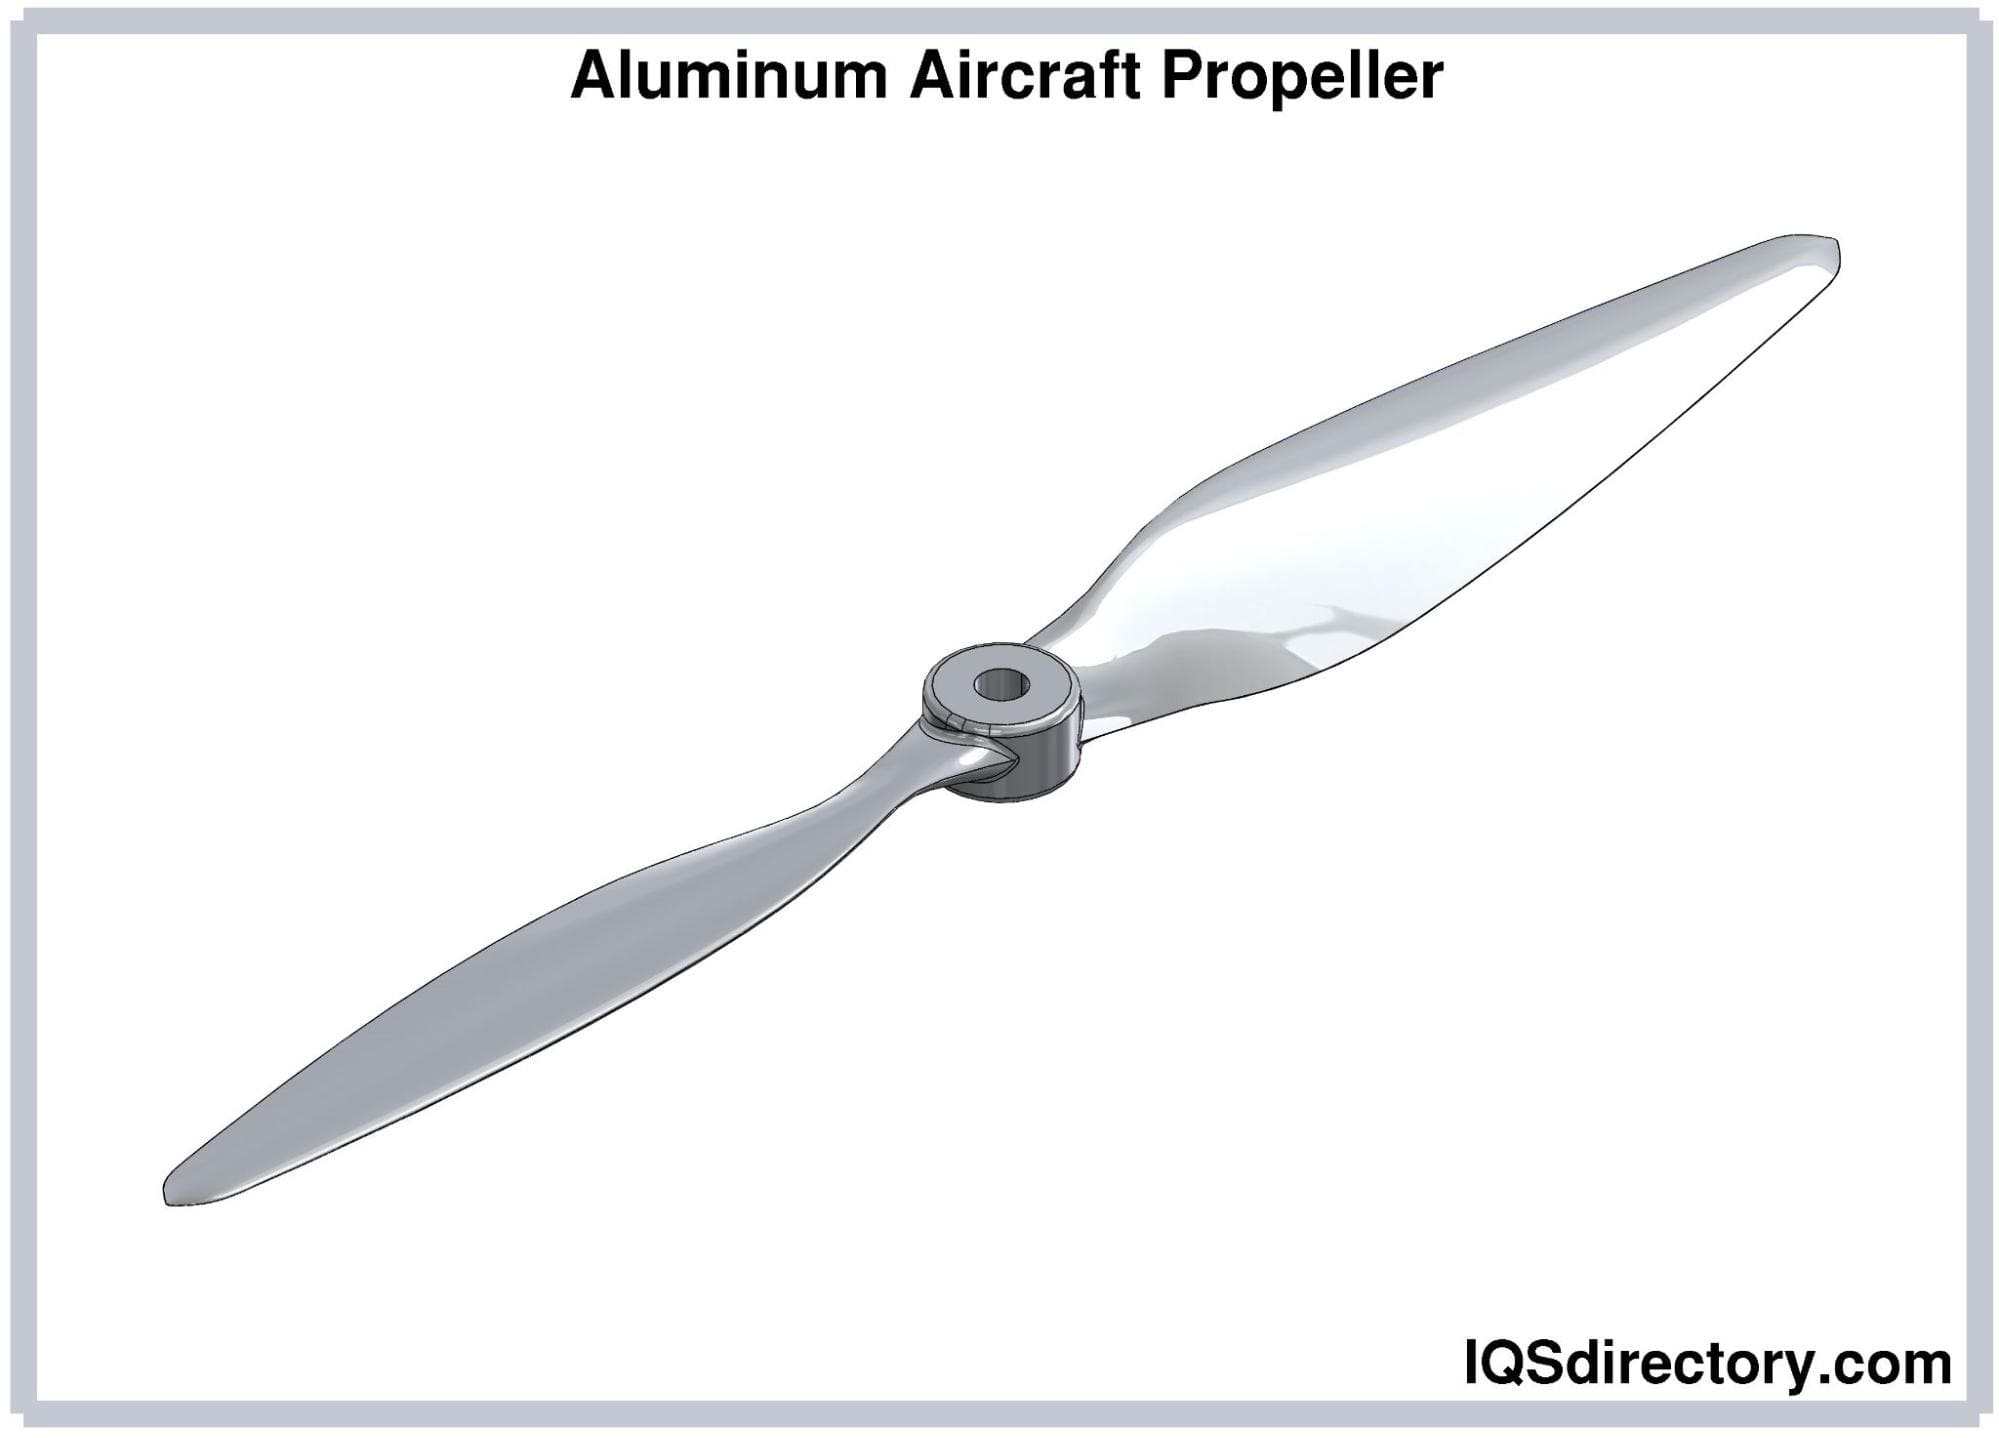 Aluminum Aircraft Propeller